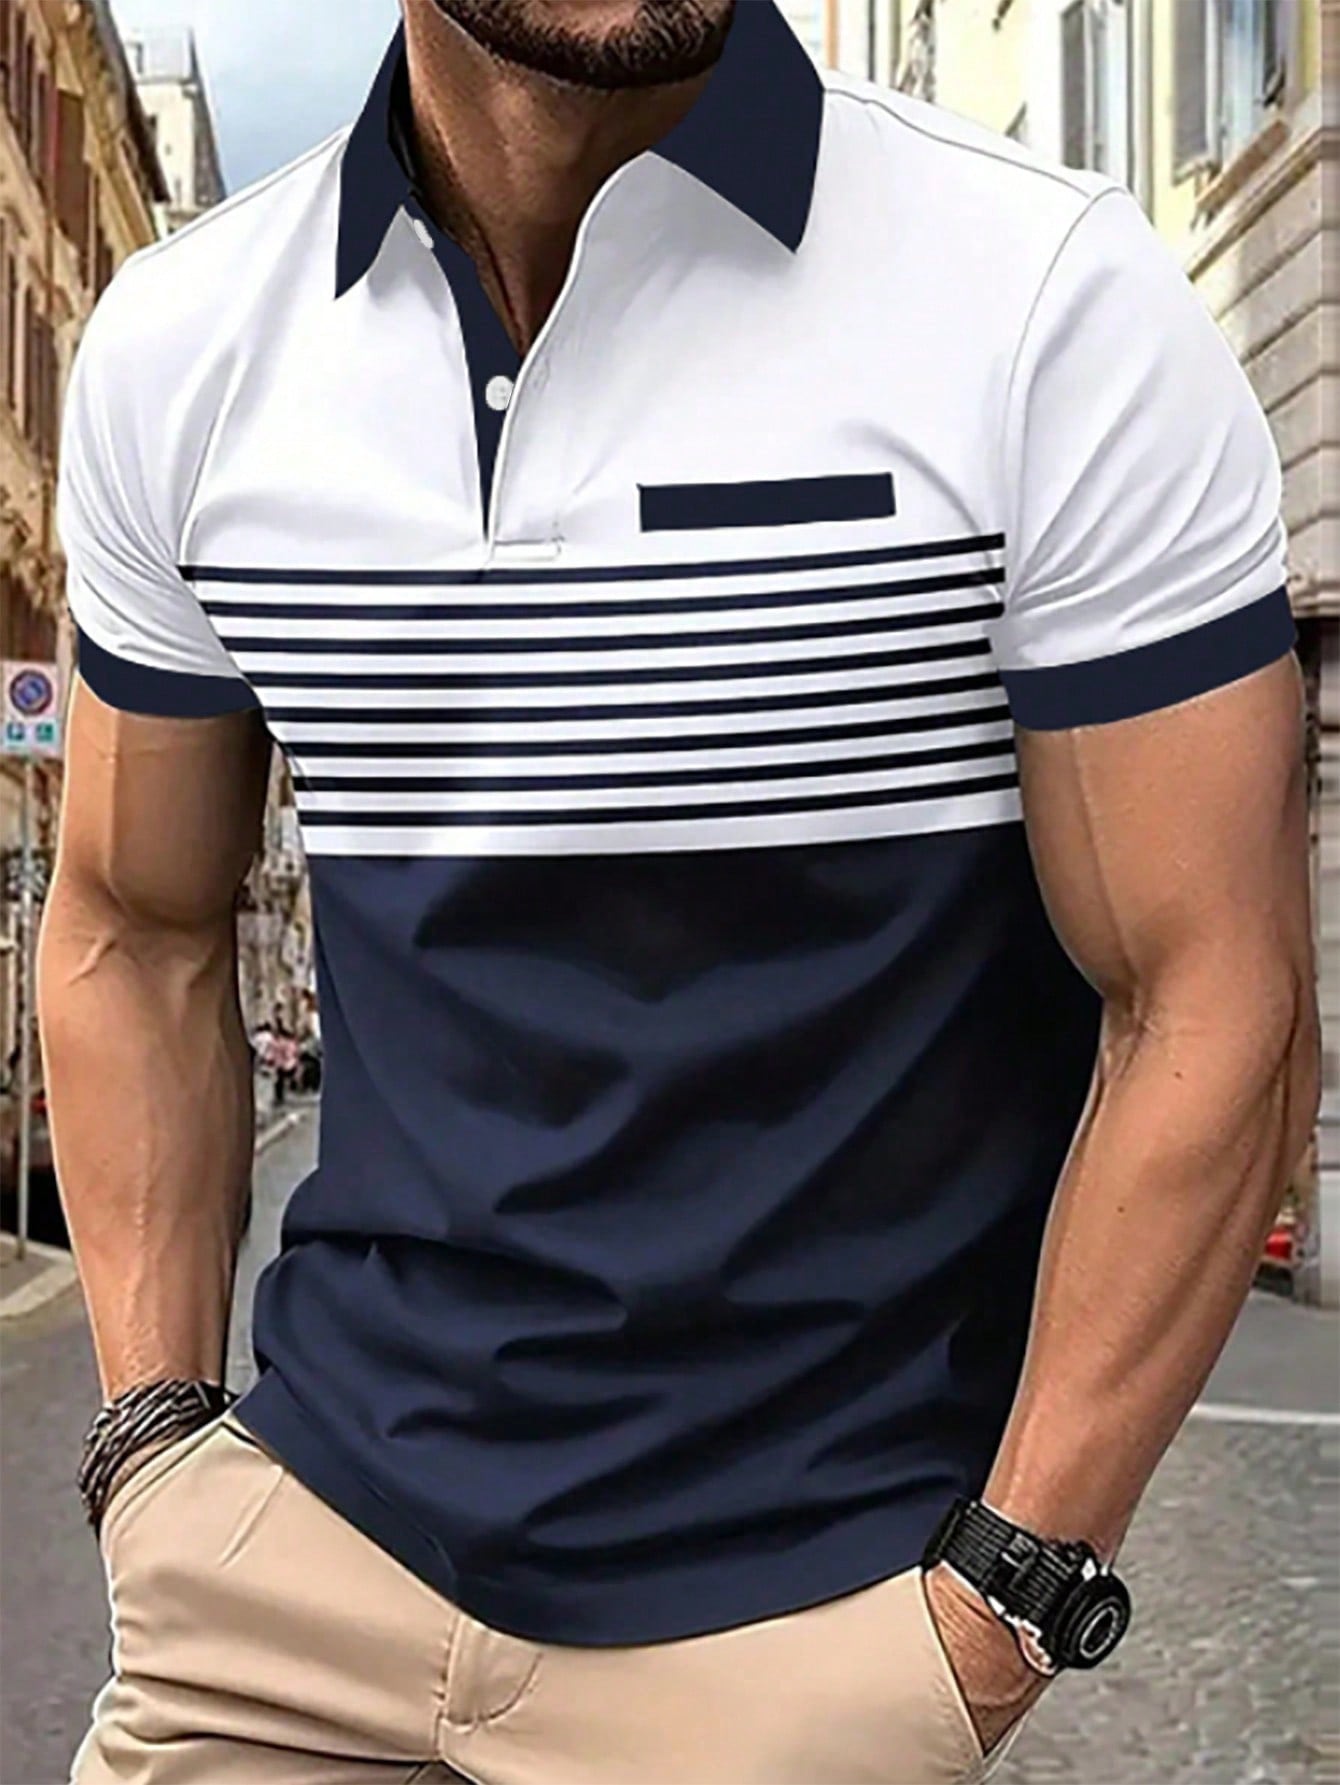 Мужская рубашка-поло контрастного цвета Manfinity Homme, белый